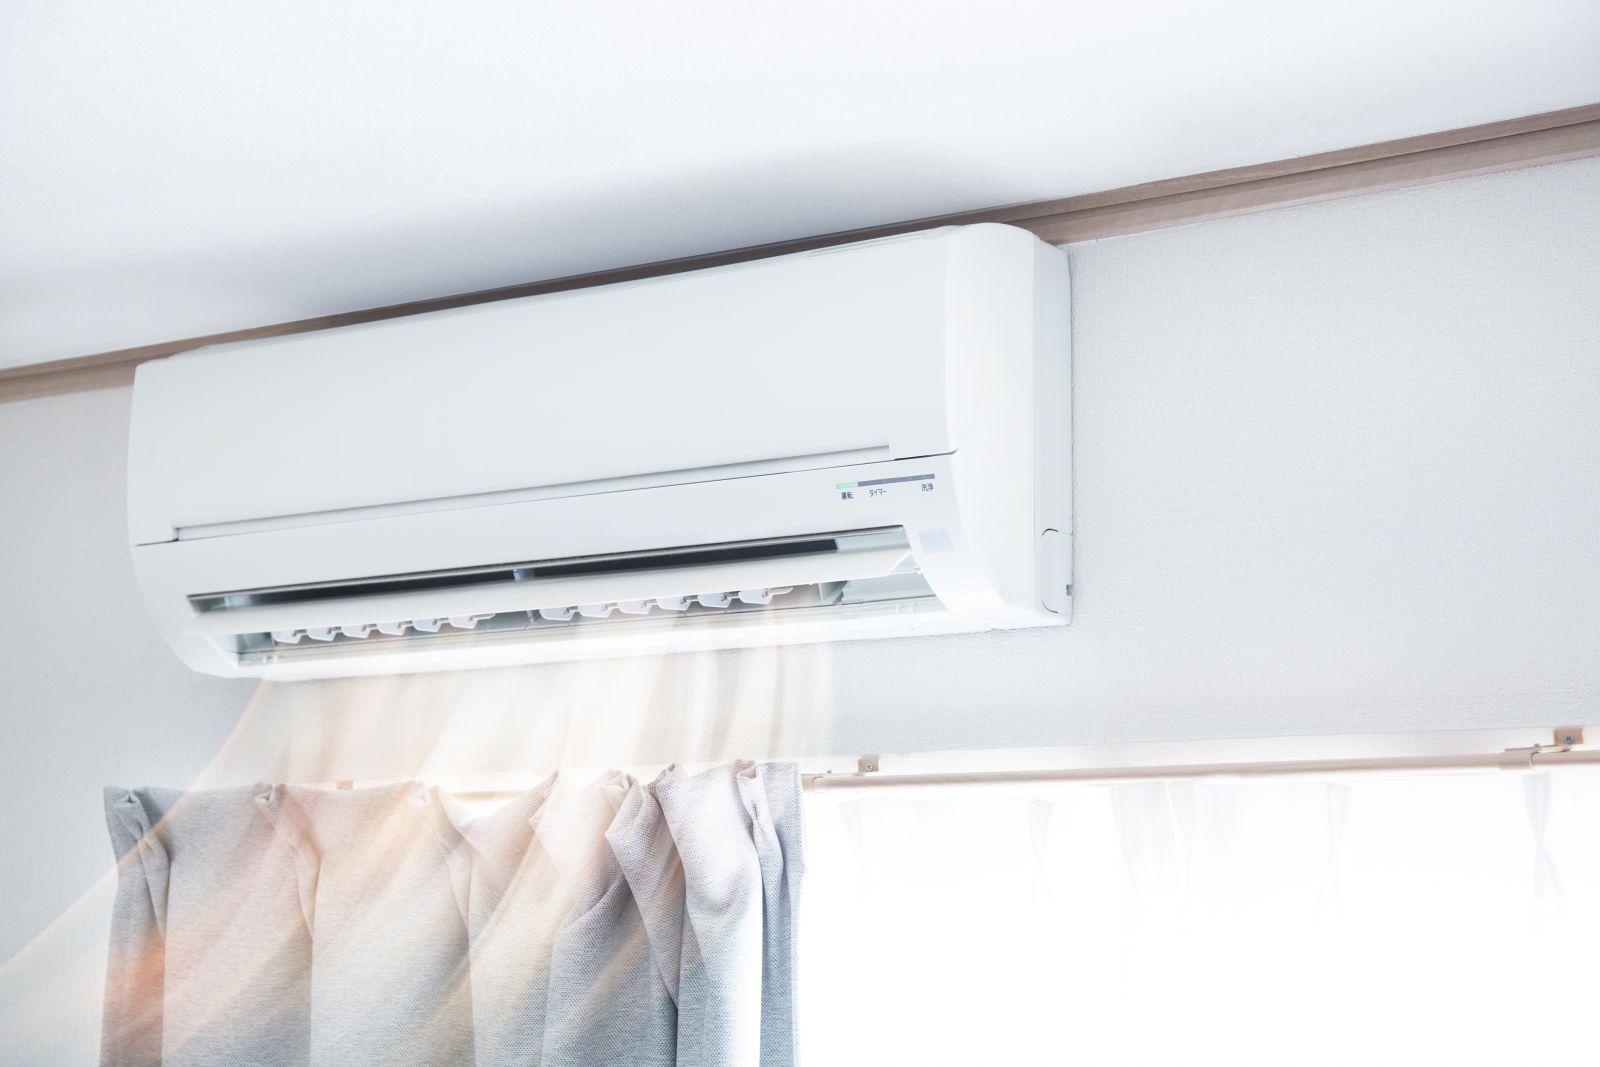 Comment cacher les splits d'une climatisation réversible ? 